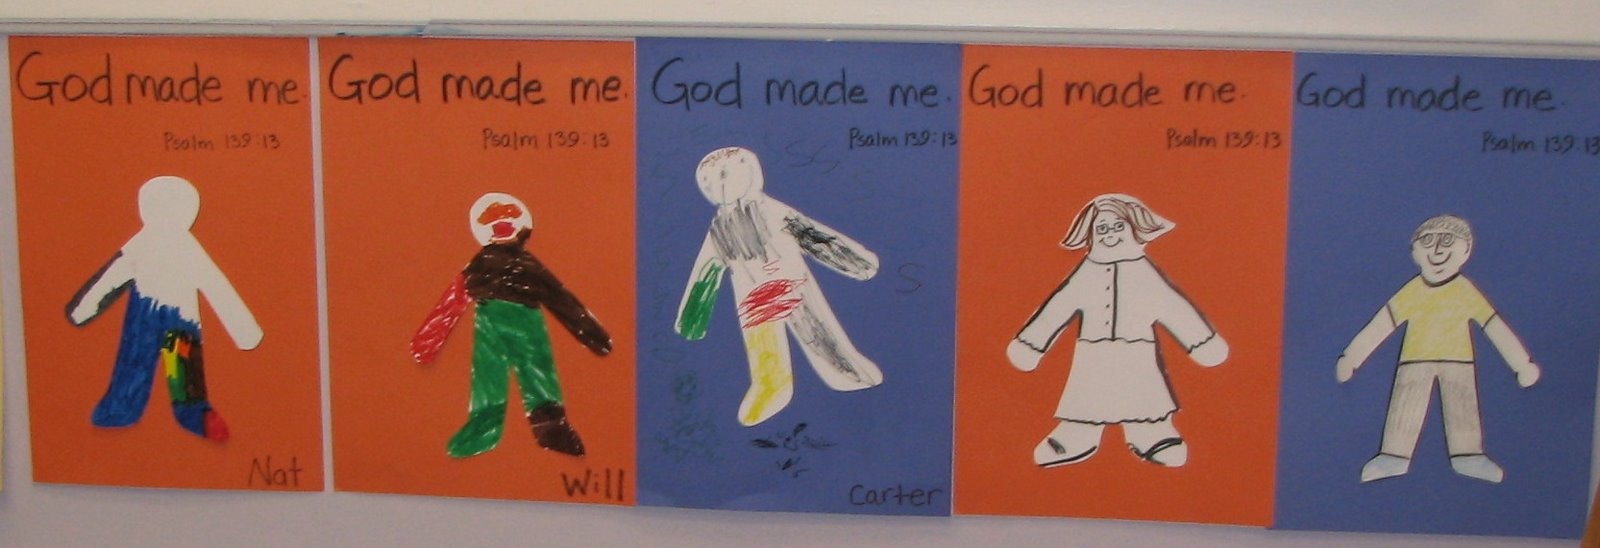 [god+made+me.JPG]